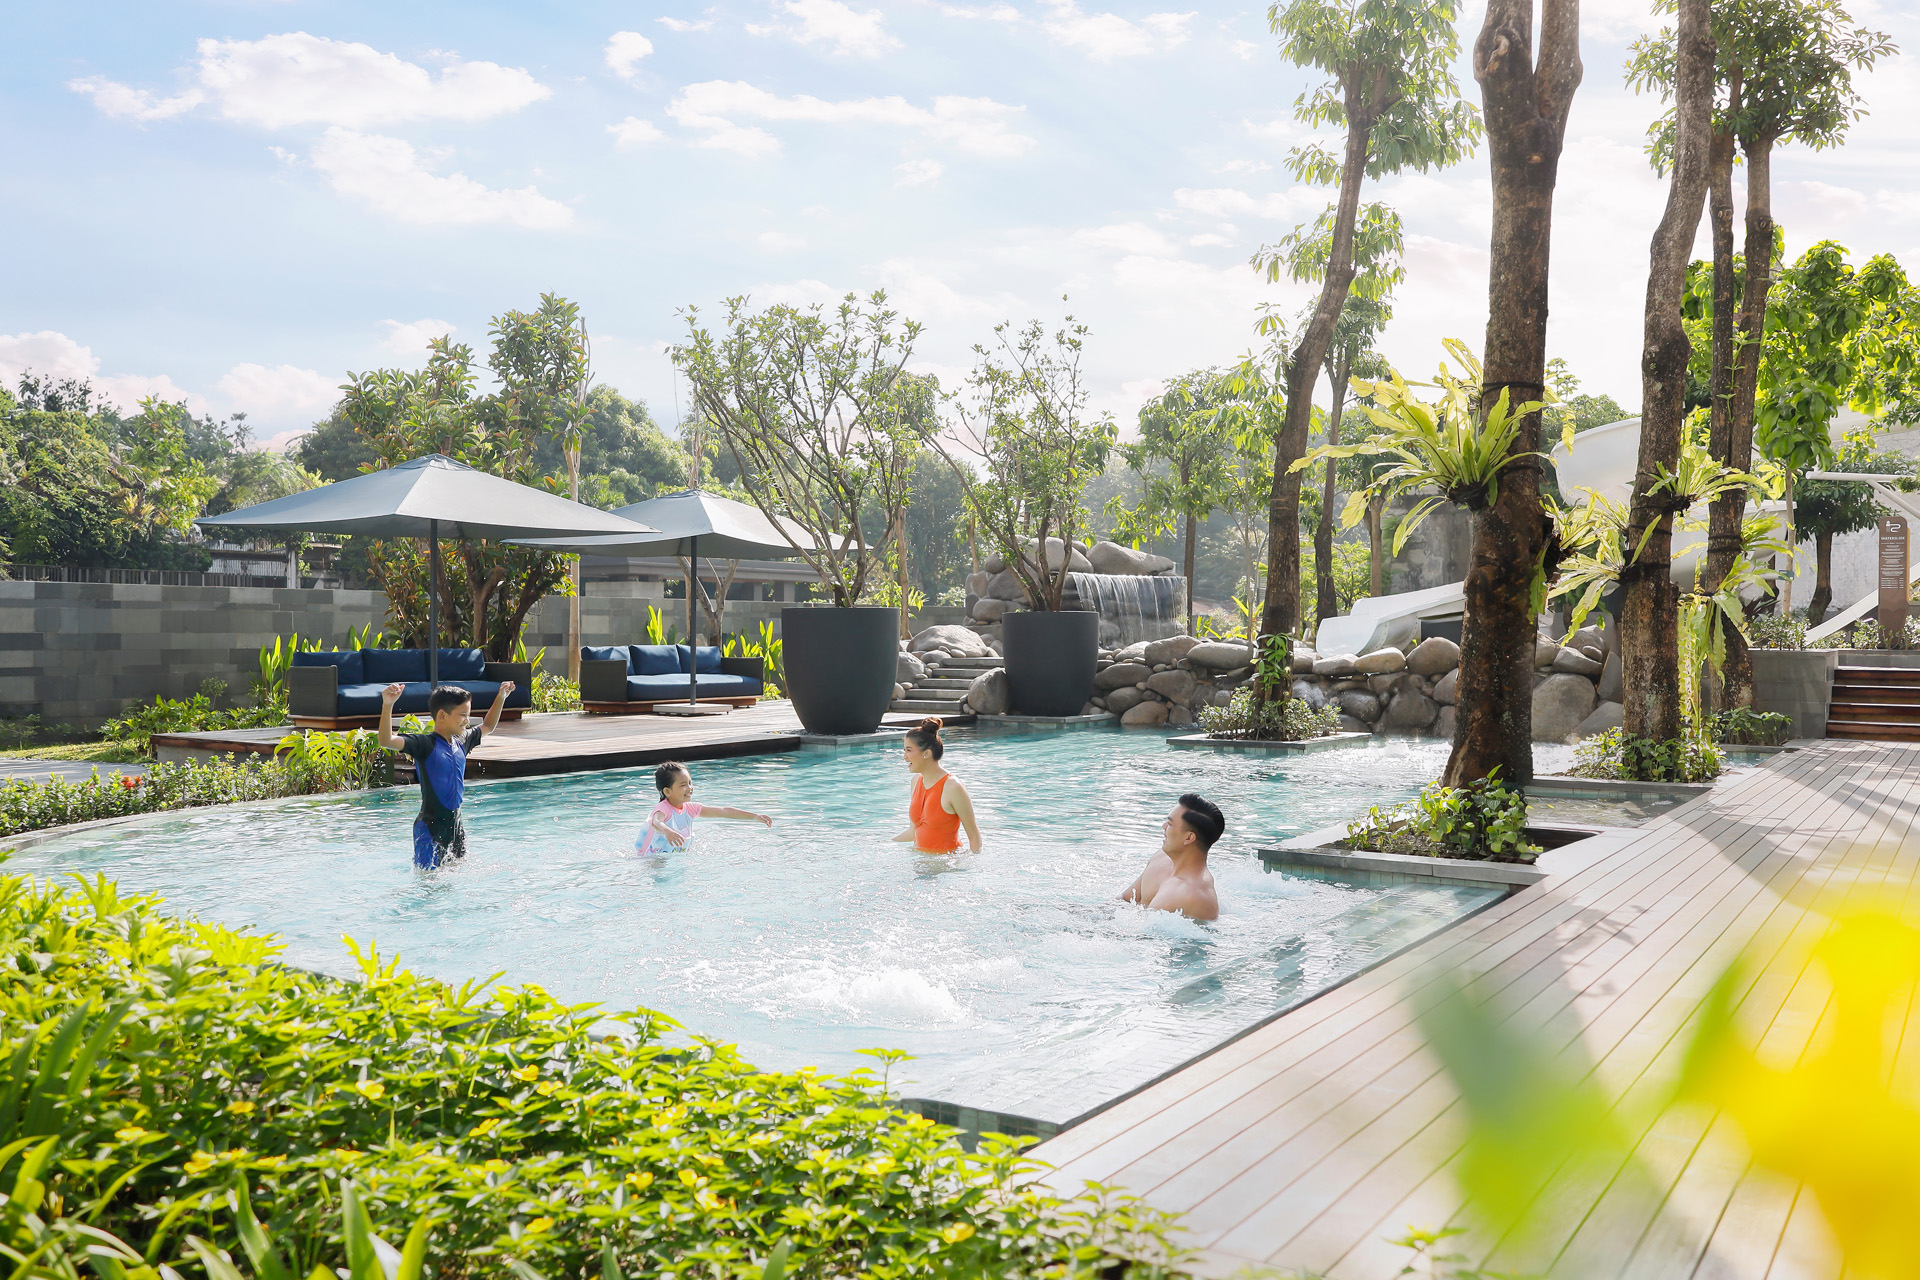 Additional Swimming Pool at Semarang Waterpark